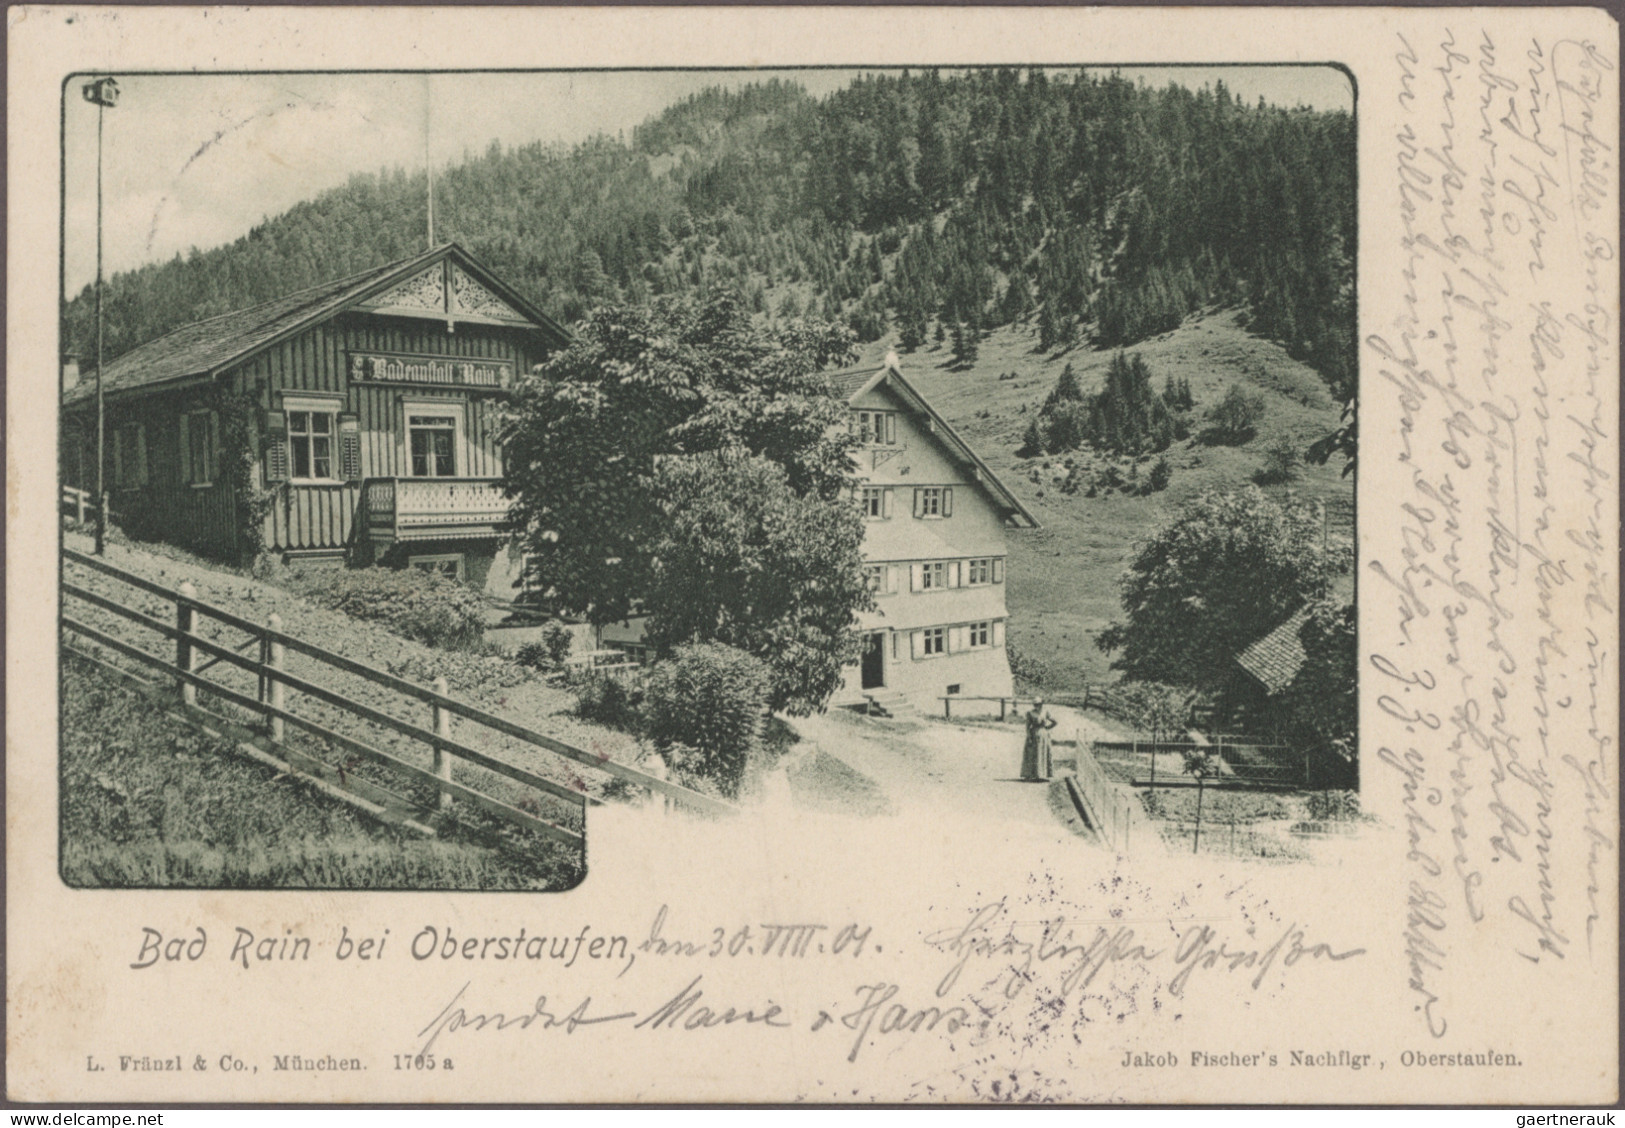 Ansichtskarten: Bayern: BAYERN, große Schachtel mit ca. 240 alten Ansichtskarten